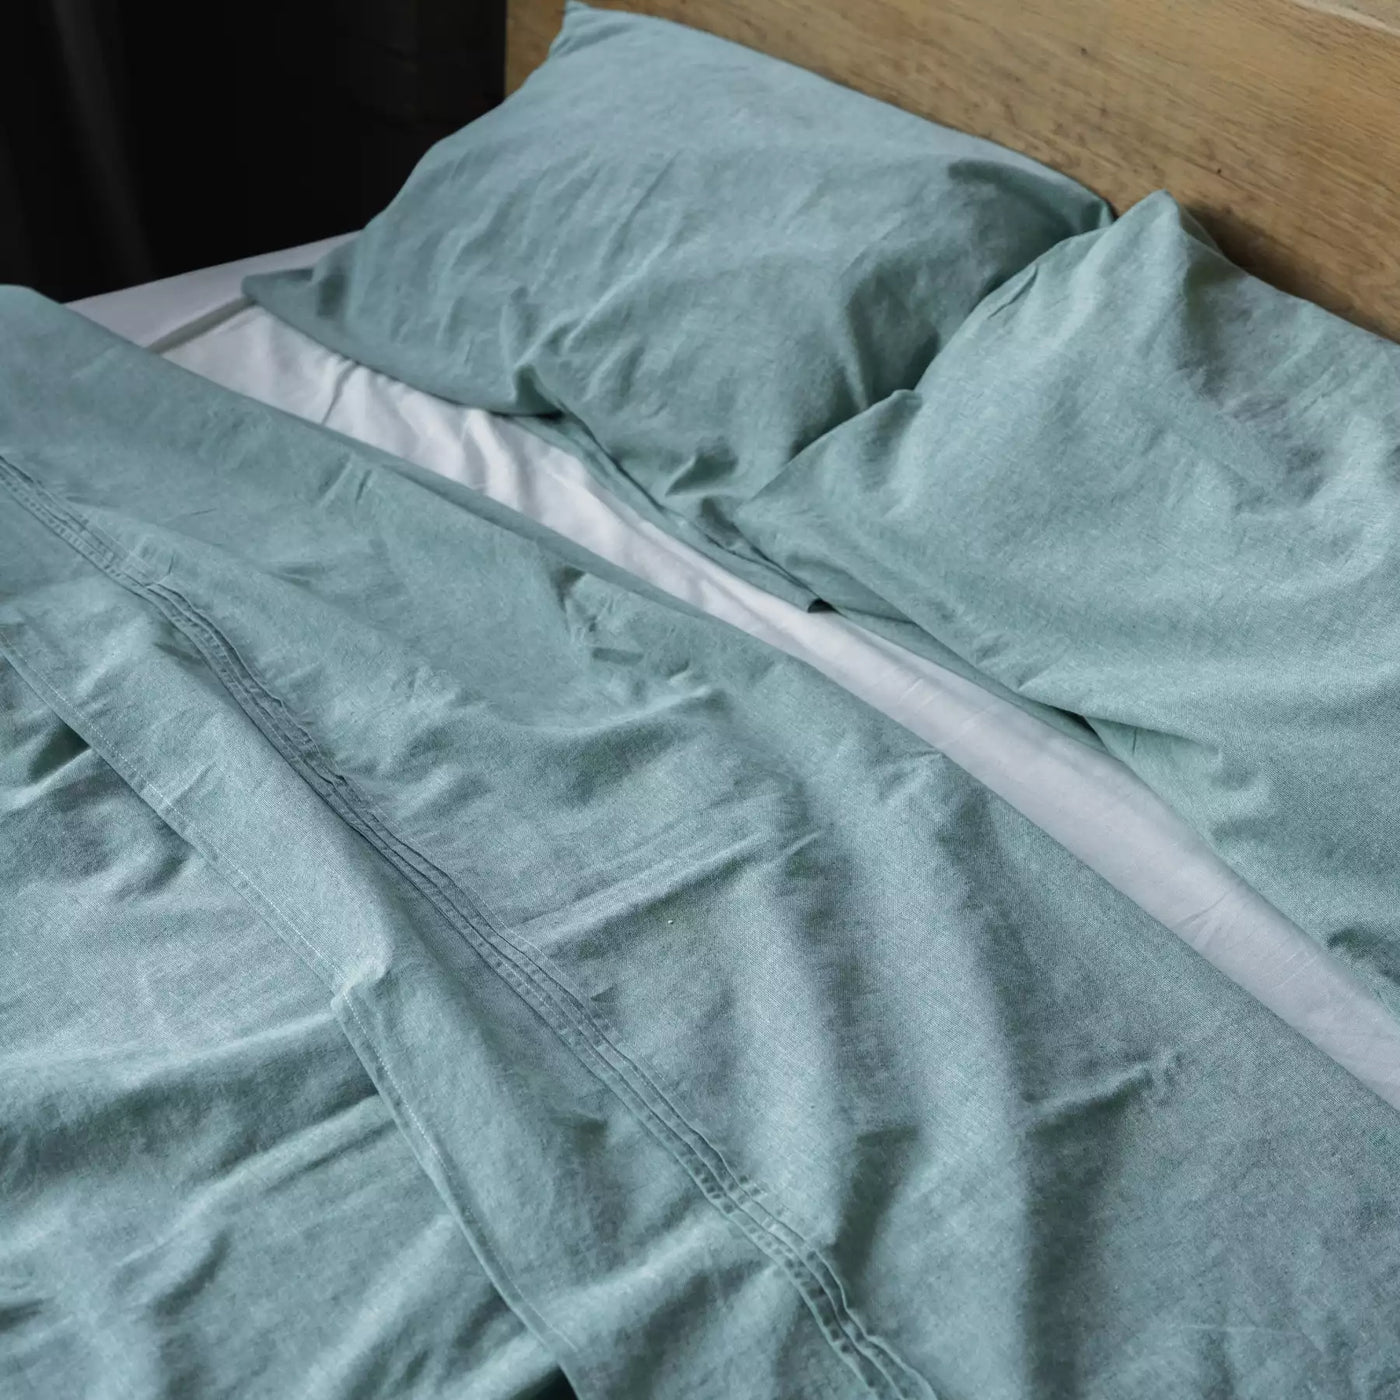 Juego de cama de lino y algodón con funda nórdica de 135x200 en Mint Melange